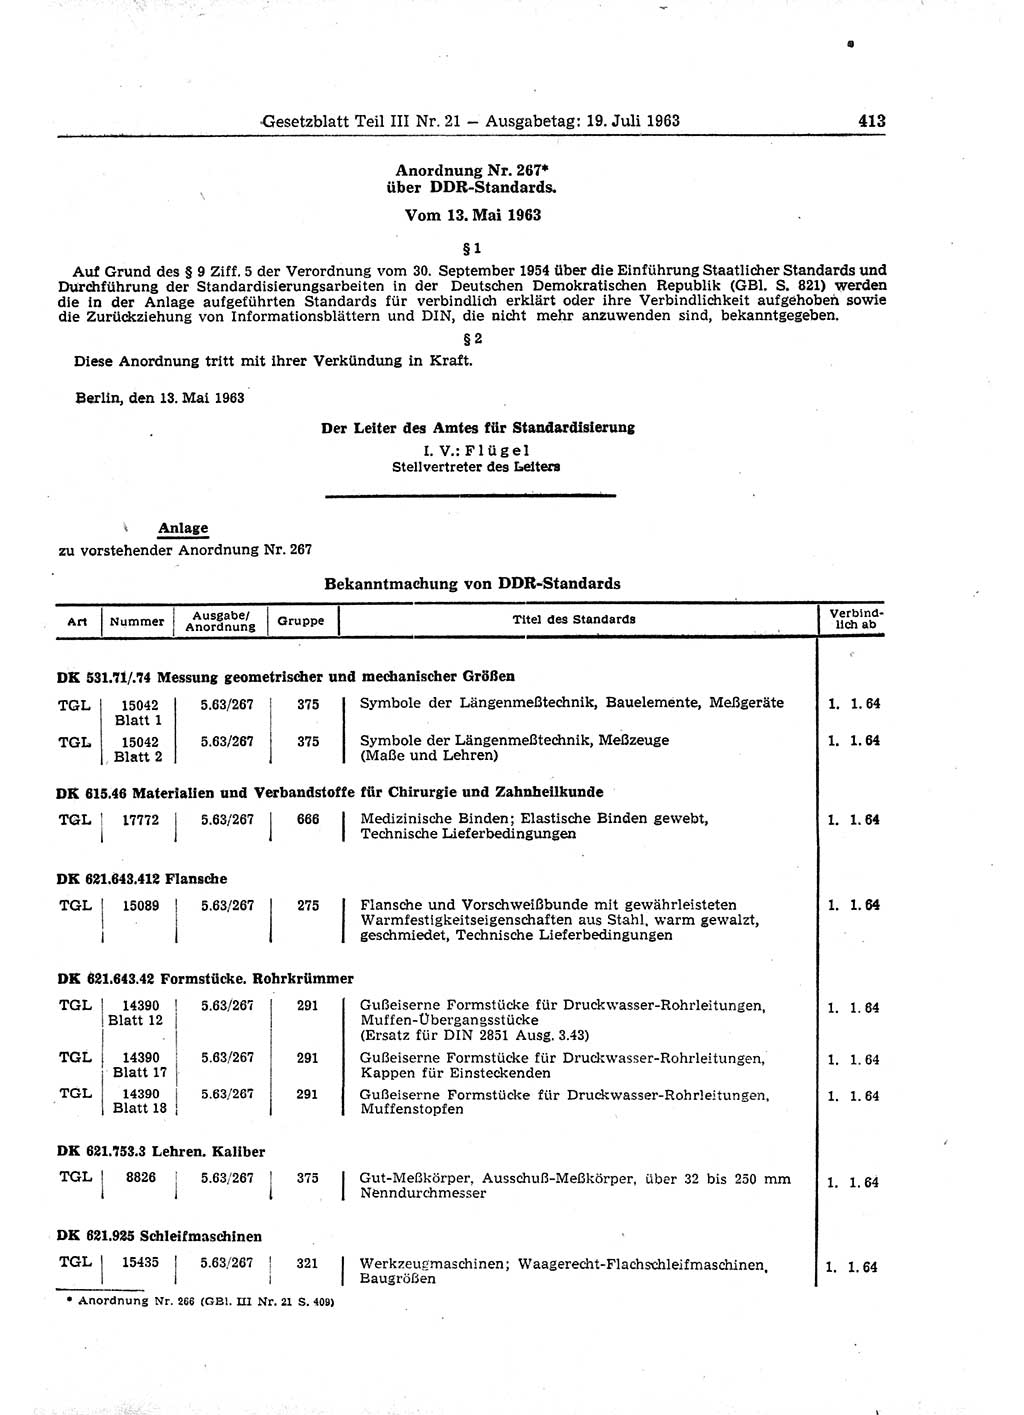 Gesetzblatt (GBl.) der Deutschen Demokratischen Republik (DDR) Teil ⅠⅠⅠ 1963, Seite 413 (GBl. DDR ⅠⅠⅠ 1963, S. 413)